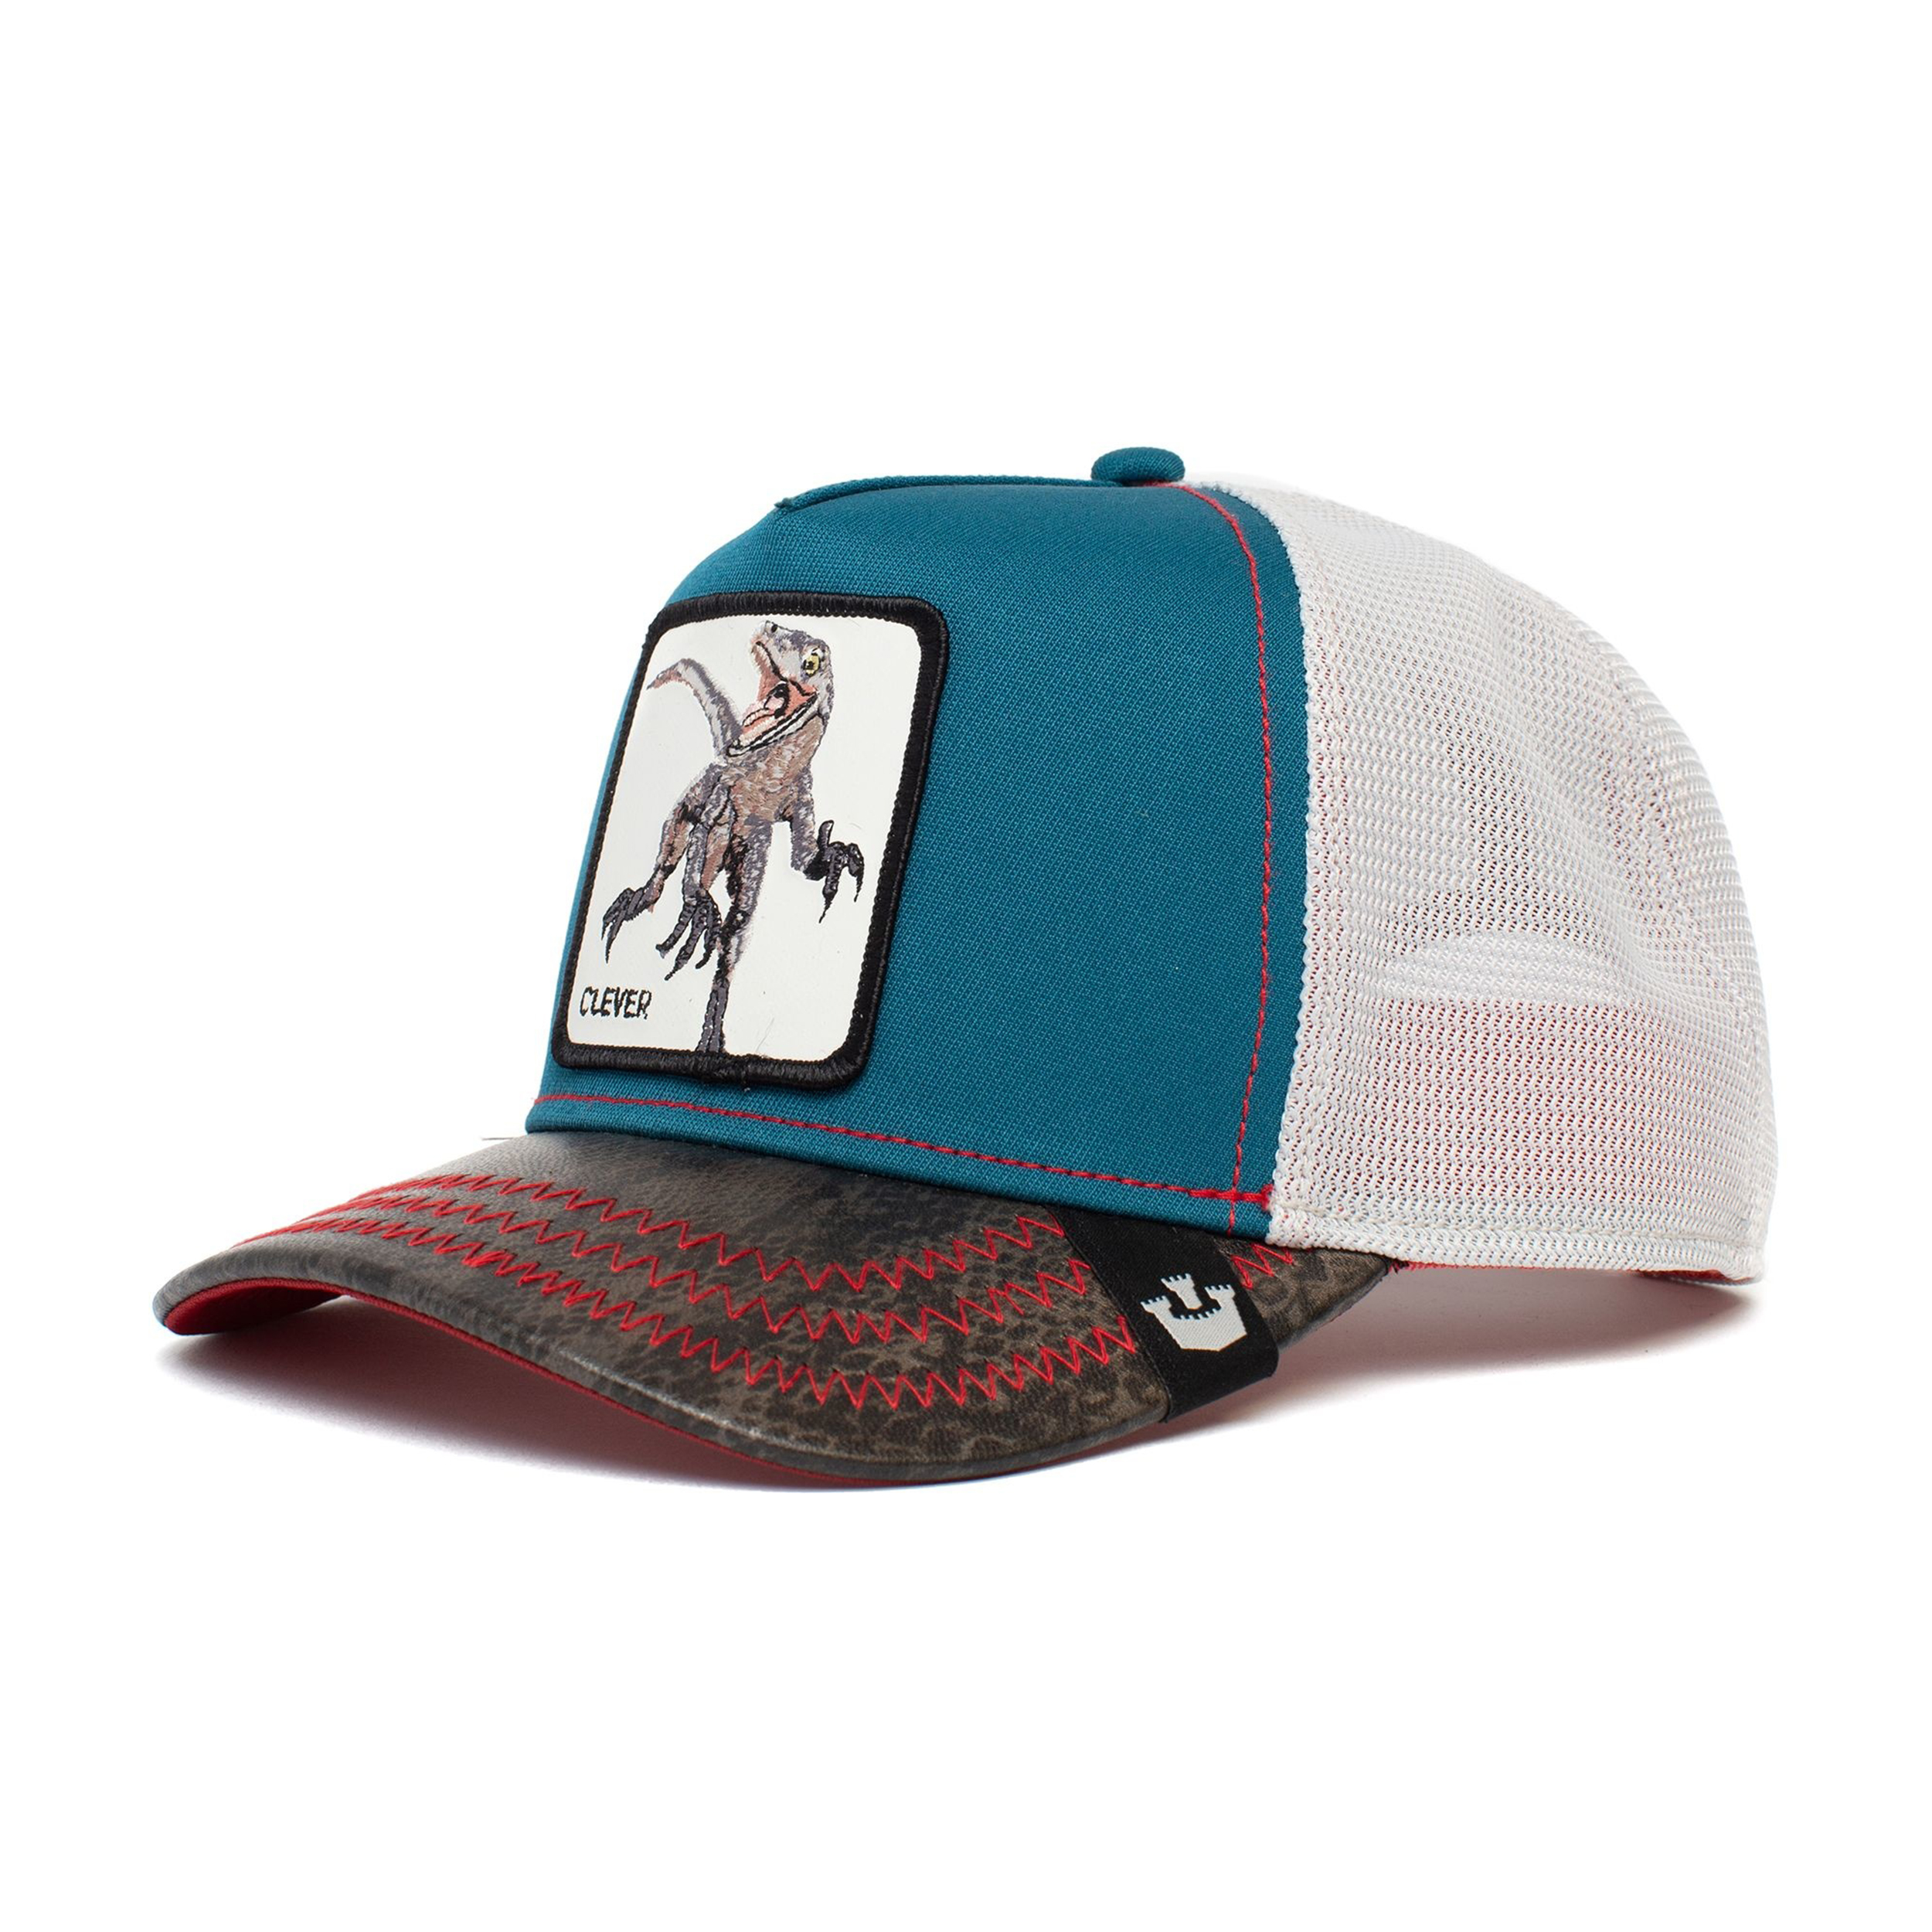 نکته خرید - قیمت روز کلاه کپ گورین براز مدل SWIFT ROBBER 101-0144 خرید